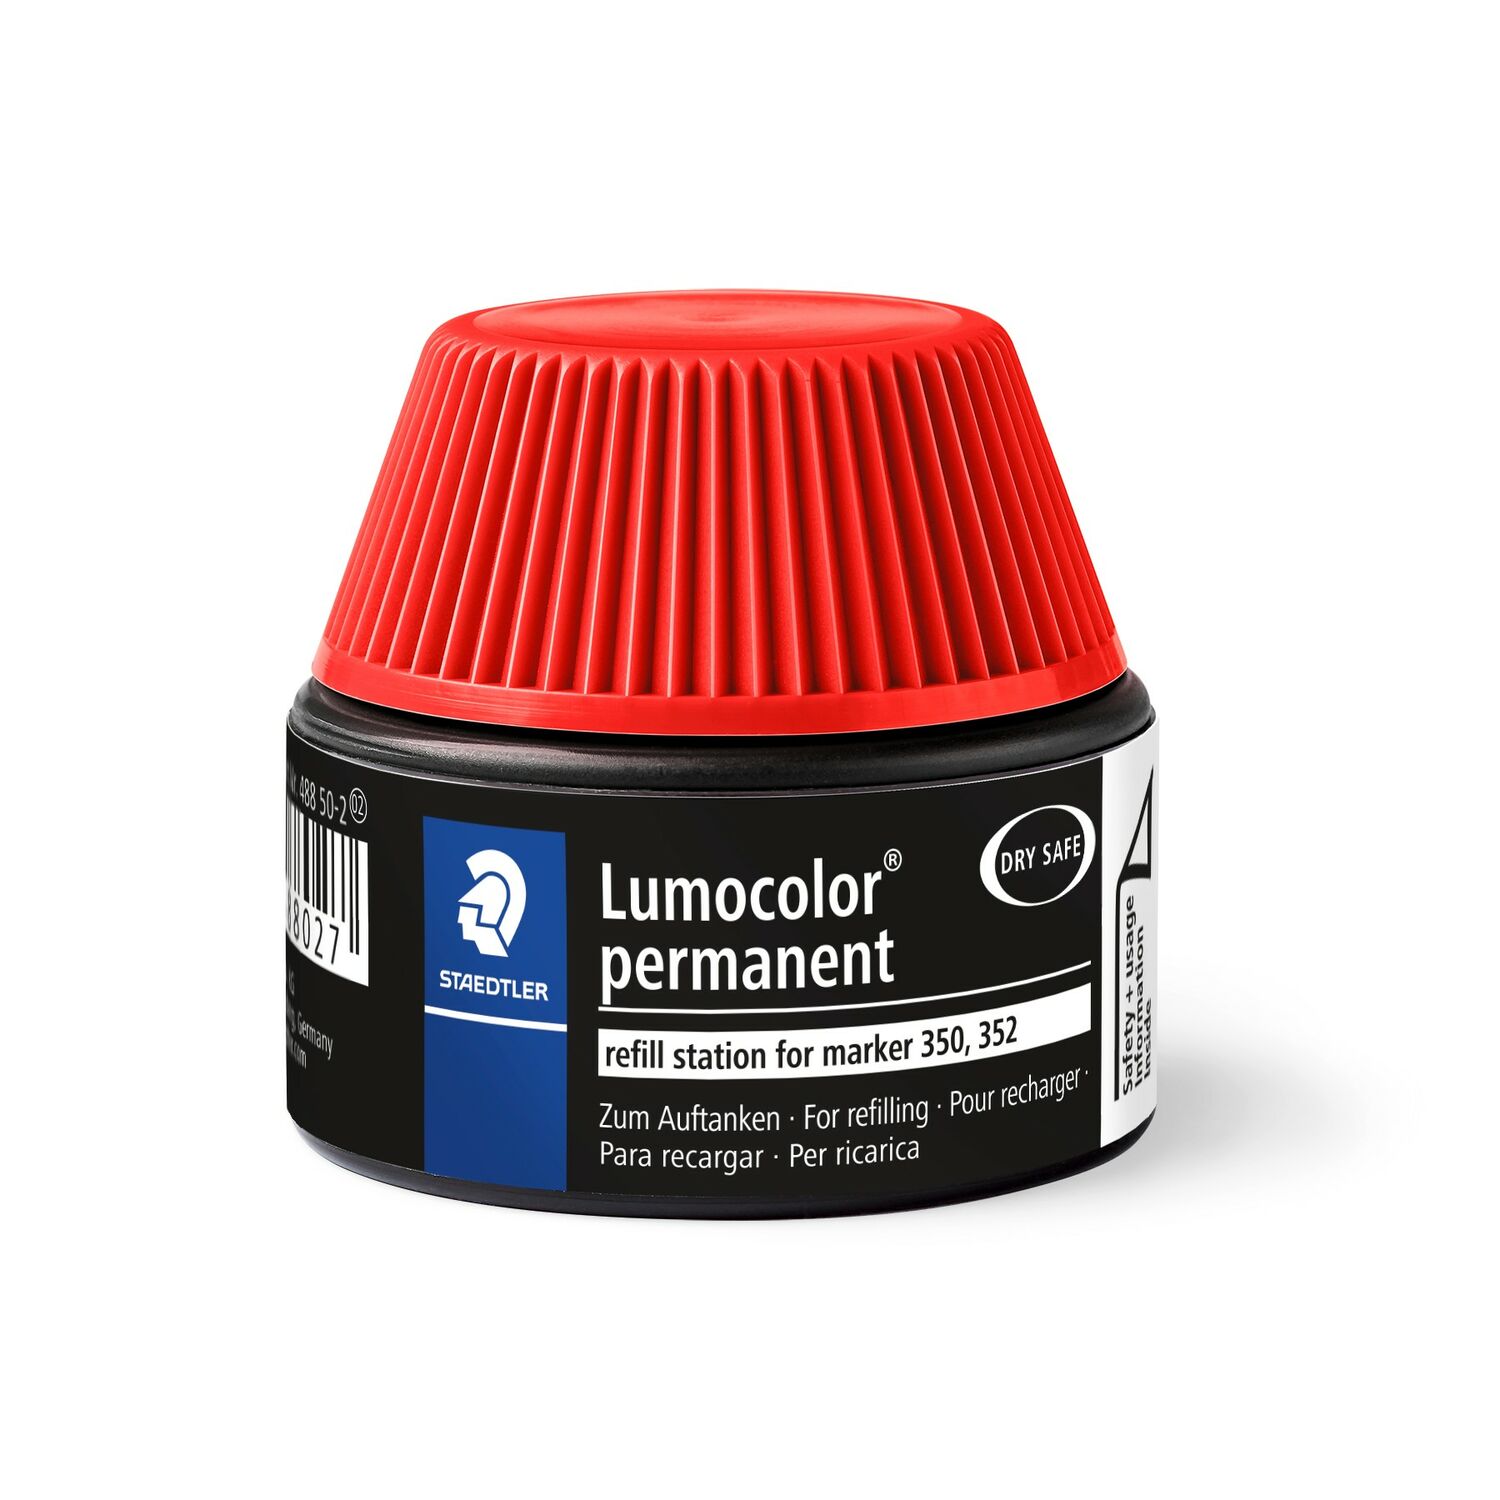 Lumocolor® permanent marker refill station 488 50 - Estación de recarga para los rotuladores permanentes Lumocolor 350 y 352